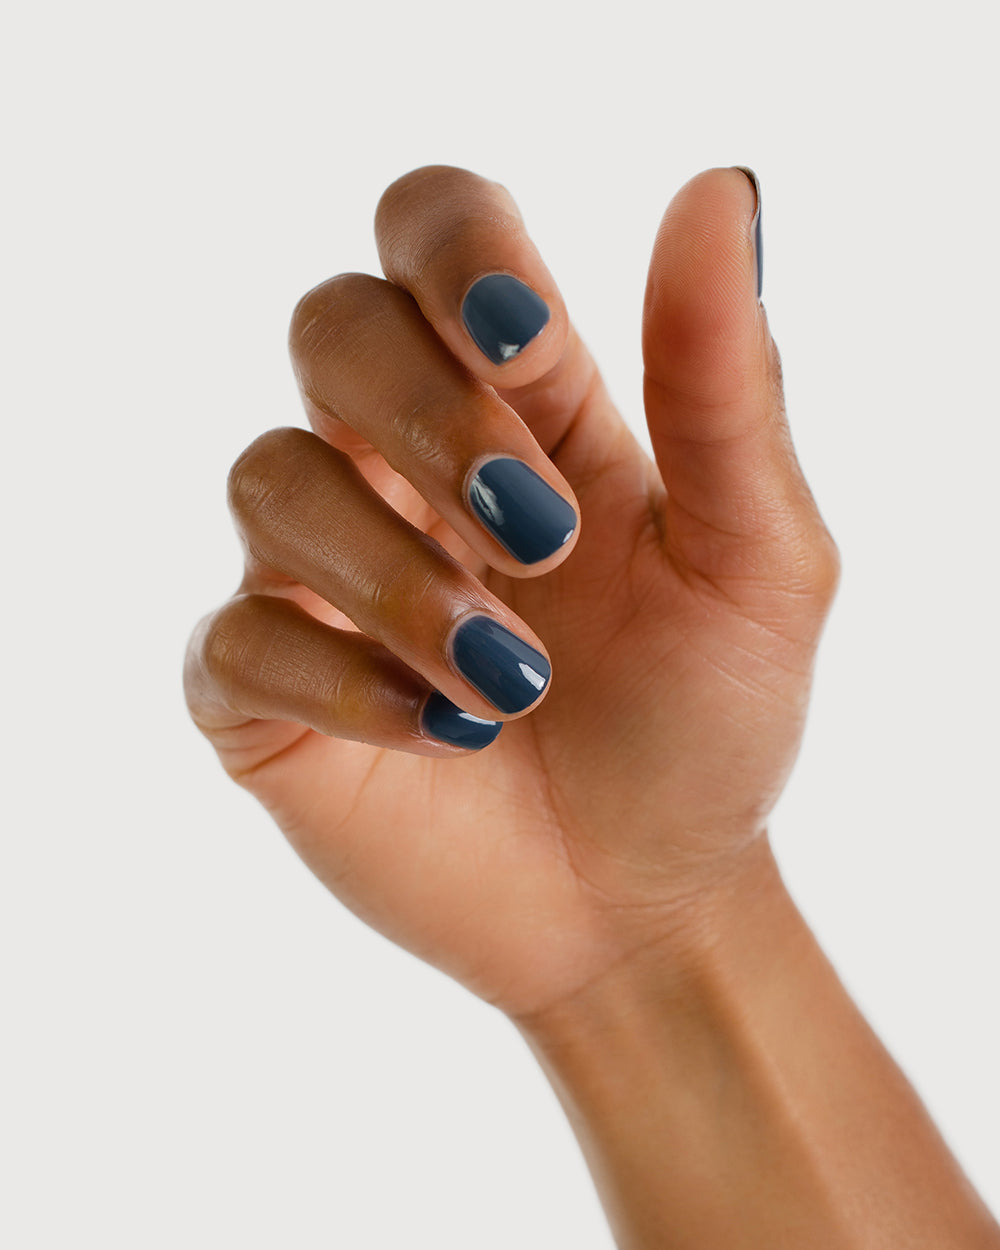 Top more than 142 granite grey nail polish latest